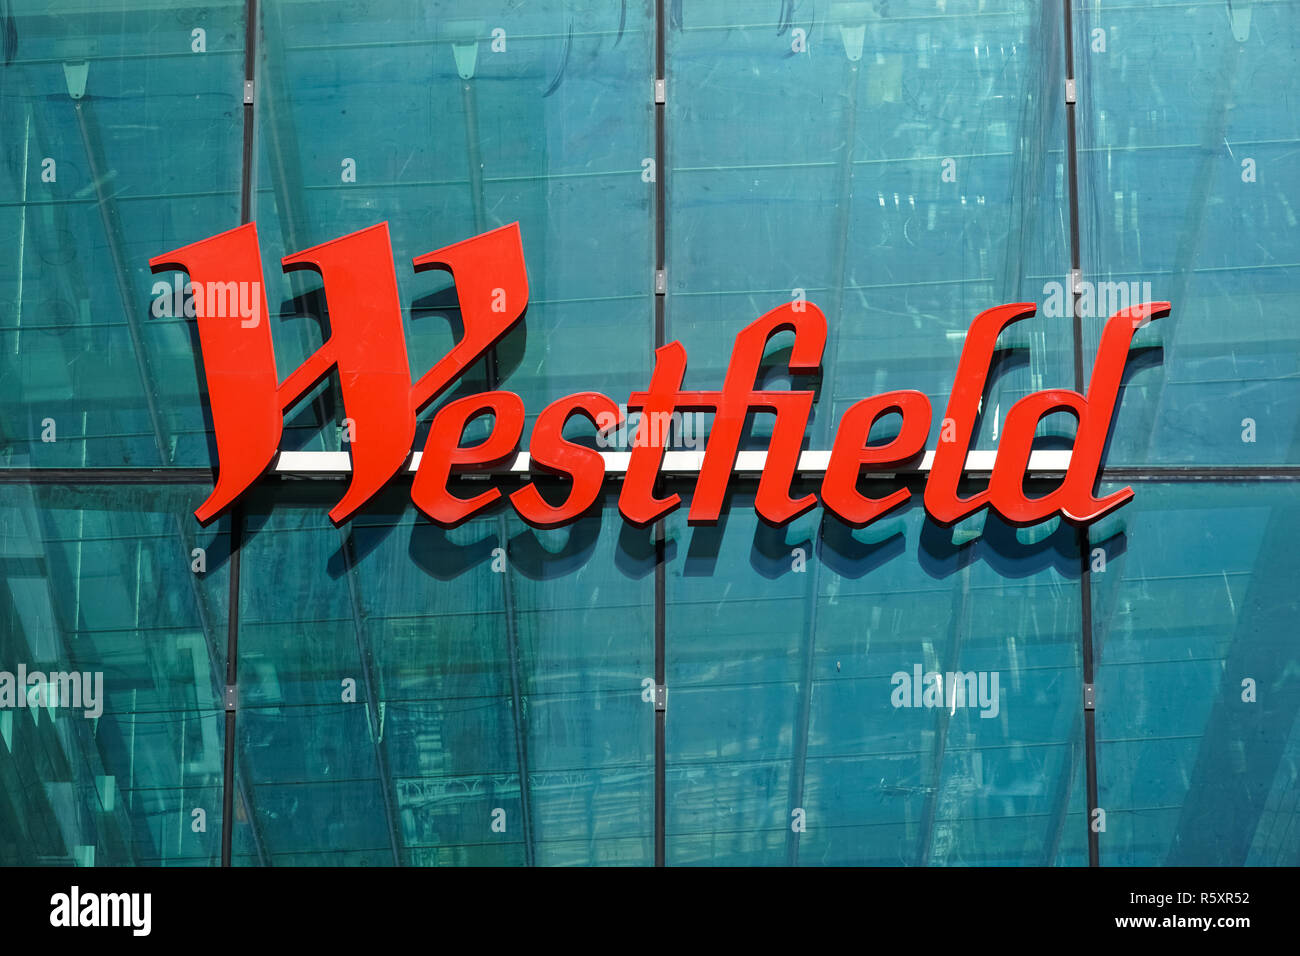 Westfield Stratford City Shopping centre, London England Vereinigtes Königreich UK Stockfoto